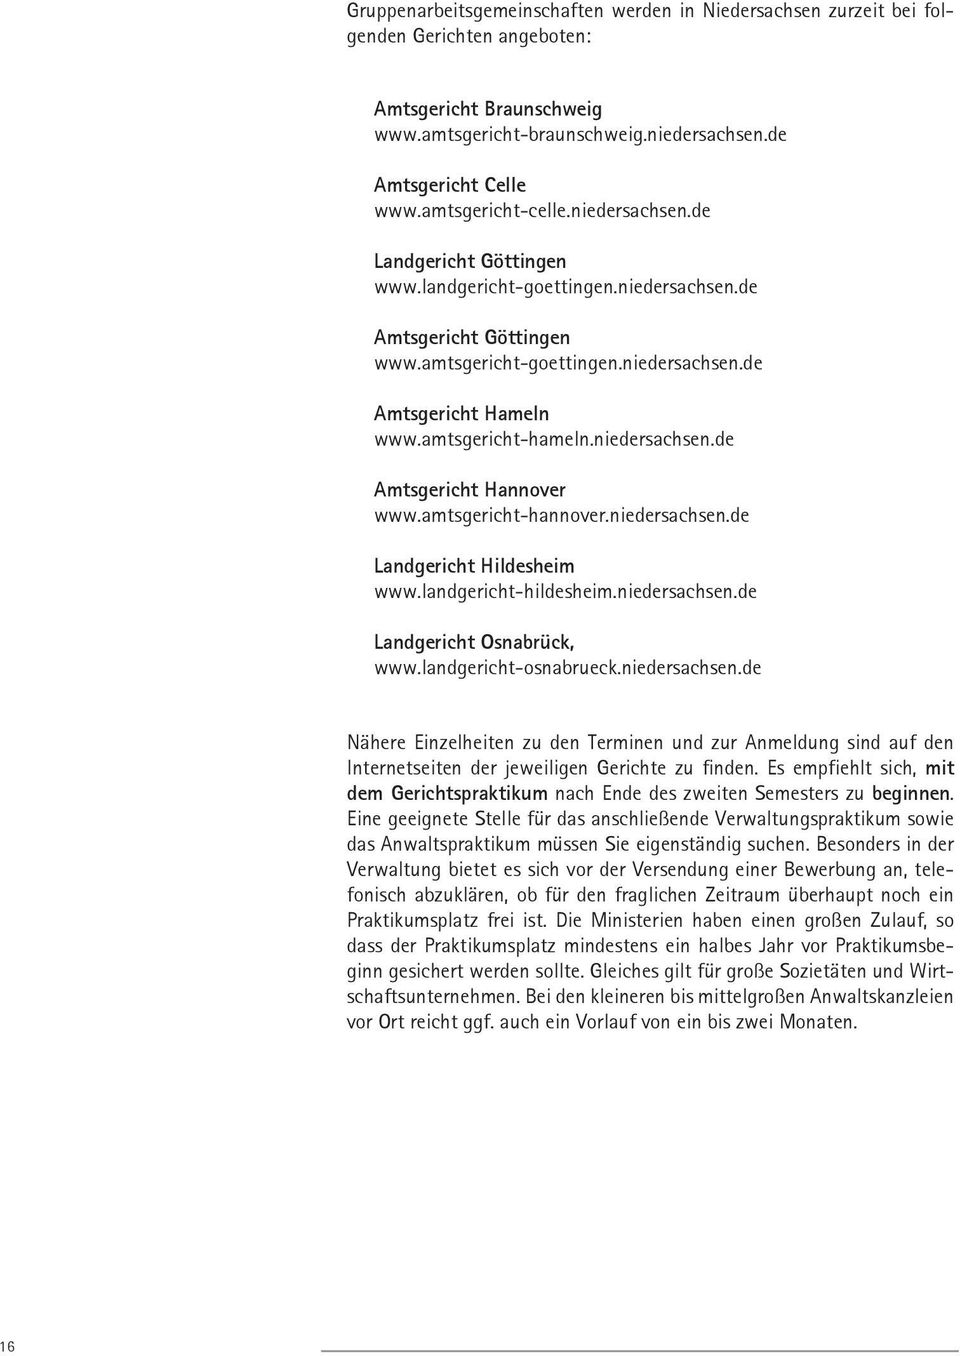 amtsgericht-hameln.niedersachsen.de Amtsgericht Hannover www.amtsgericht-hannover.niedersachsen.de Landgericht Hildesheim www.landgericht-hildesheim.niedersachsen.de Landgericht Osnabrück, www.